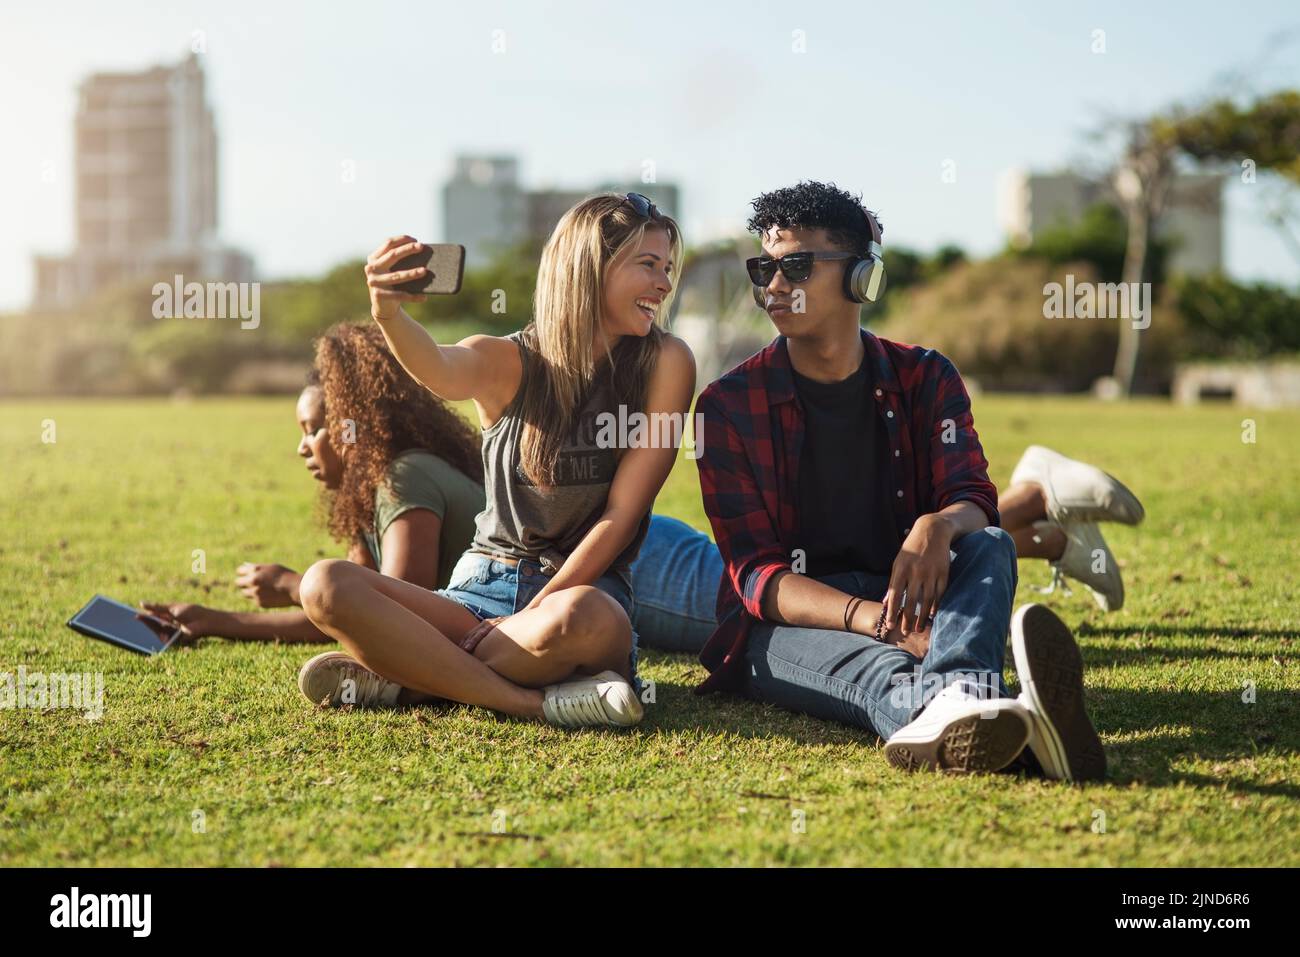 Regardez ici avec stupides. Deux jeunes amis joyeux prenant un autoportrait ensemble tout en écoutant de la musique sur des écouteurs à l'extérieur dans un parc. Banque D'Images